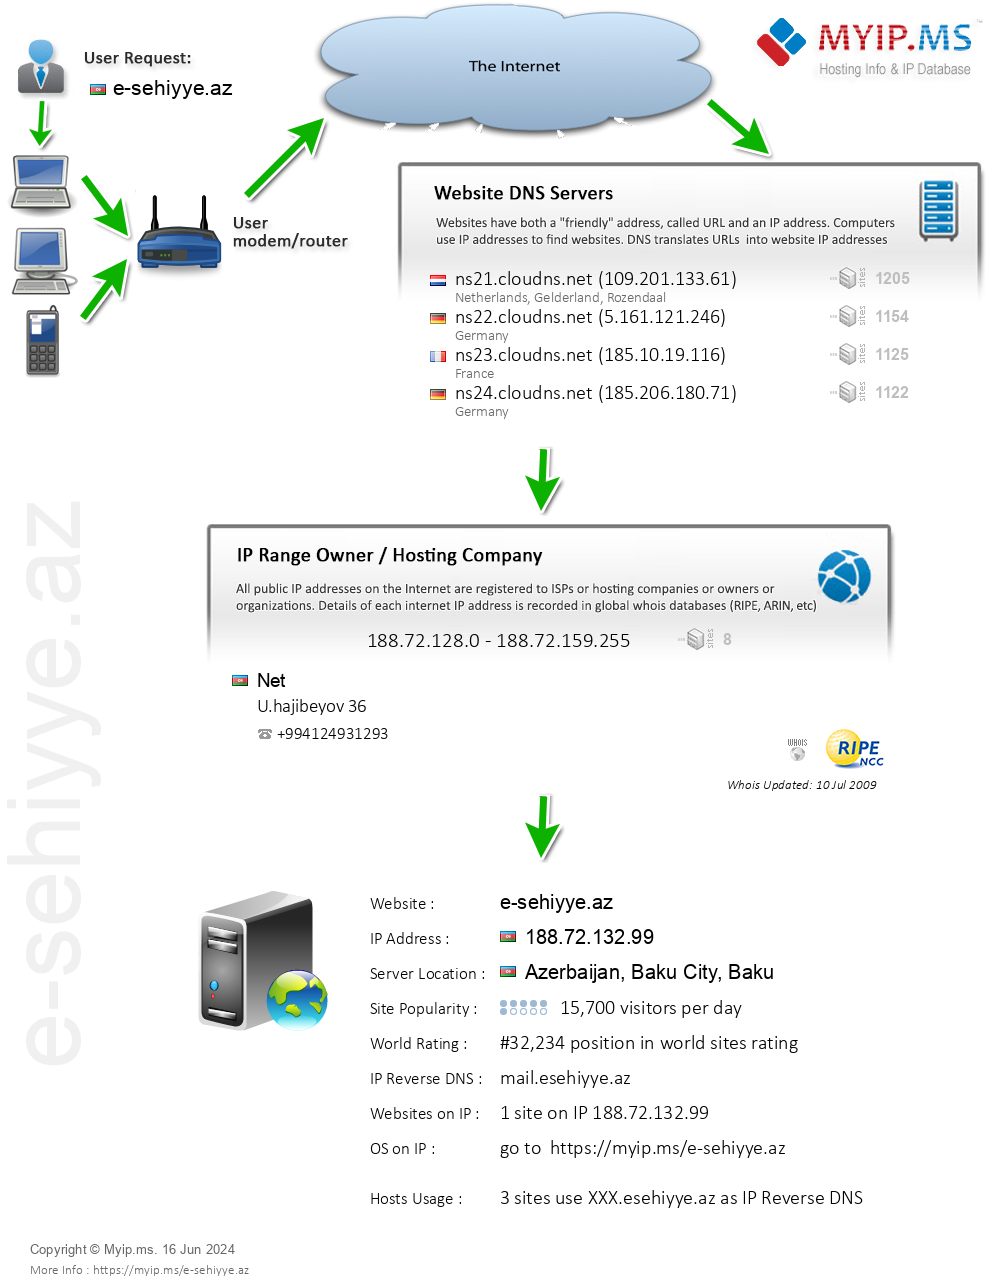 E-sehiyye.az - Website Hosting Visual IP Diagram